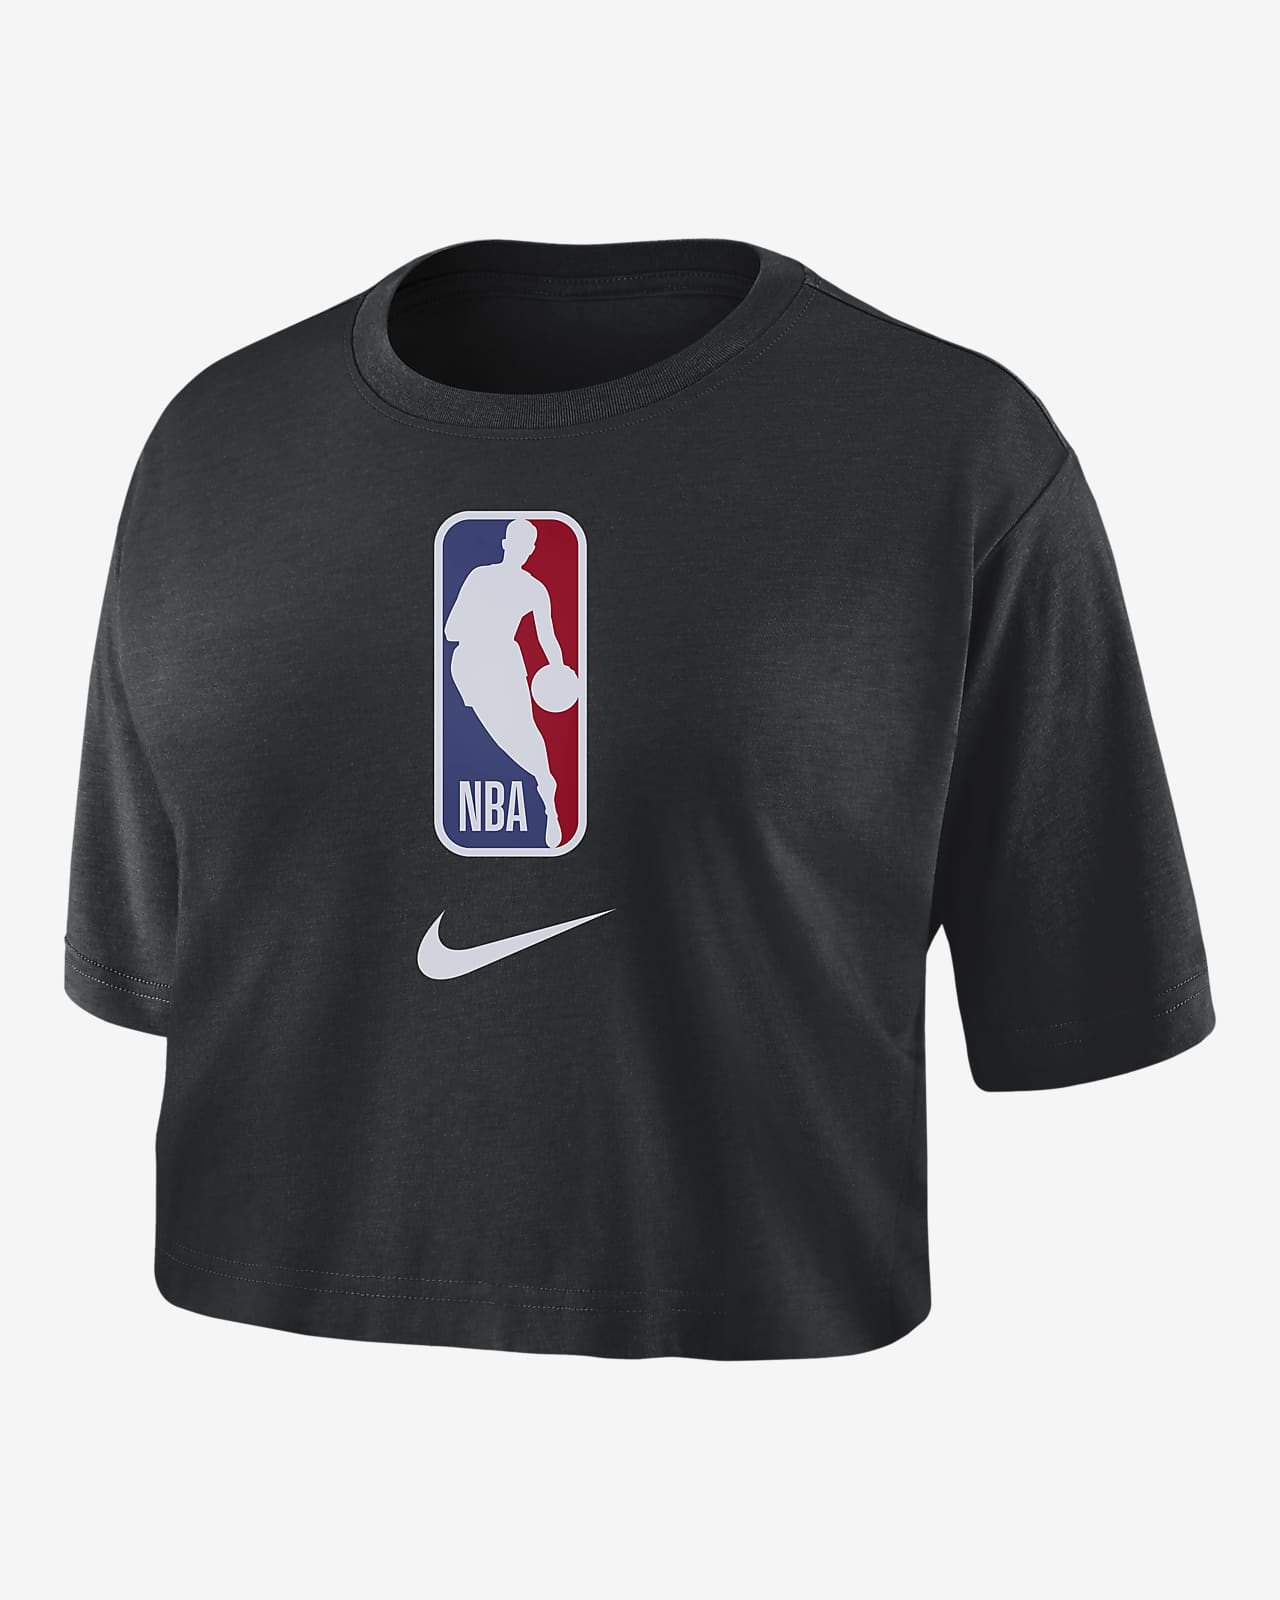 Team 31 Women's Nike NBA Cropped T-Shirt